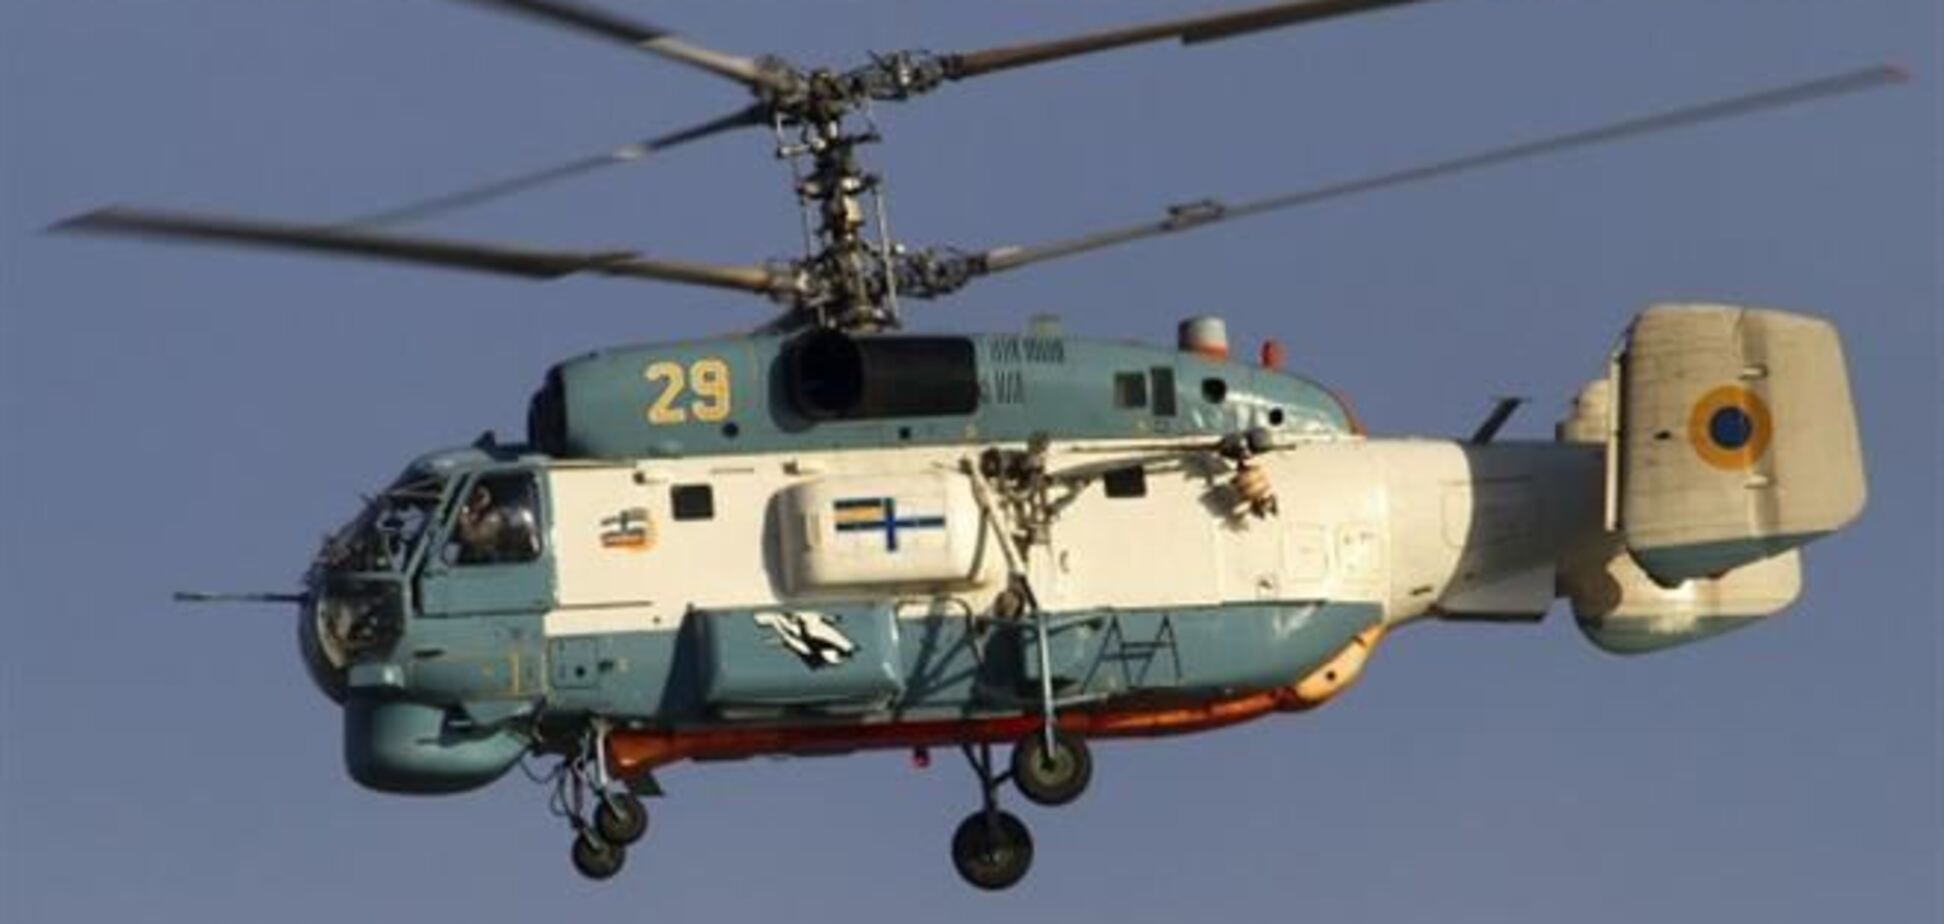 Из заблокированного аэродрома в Саках удалось спасти вертолет